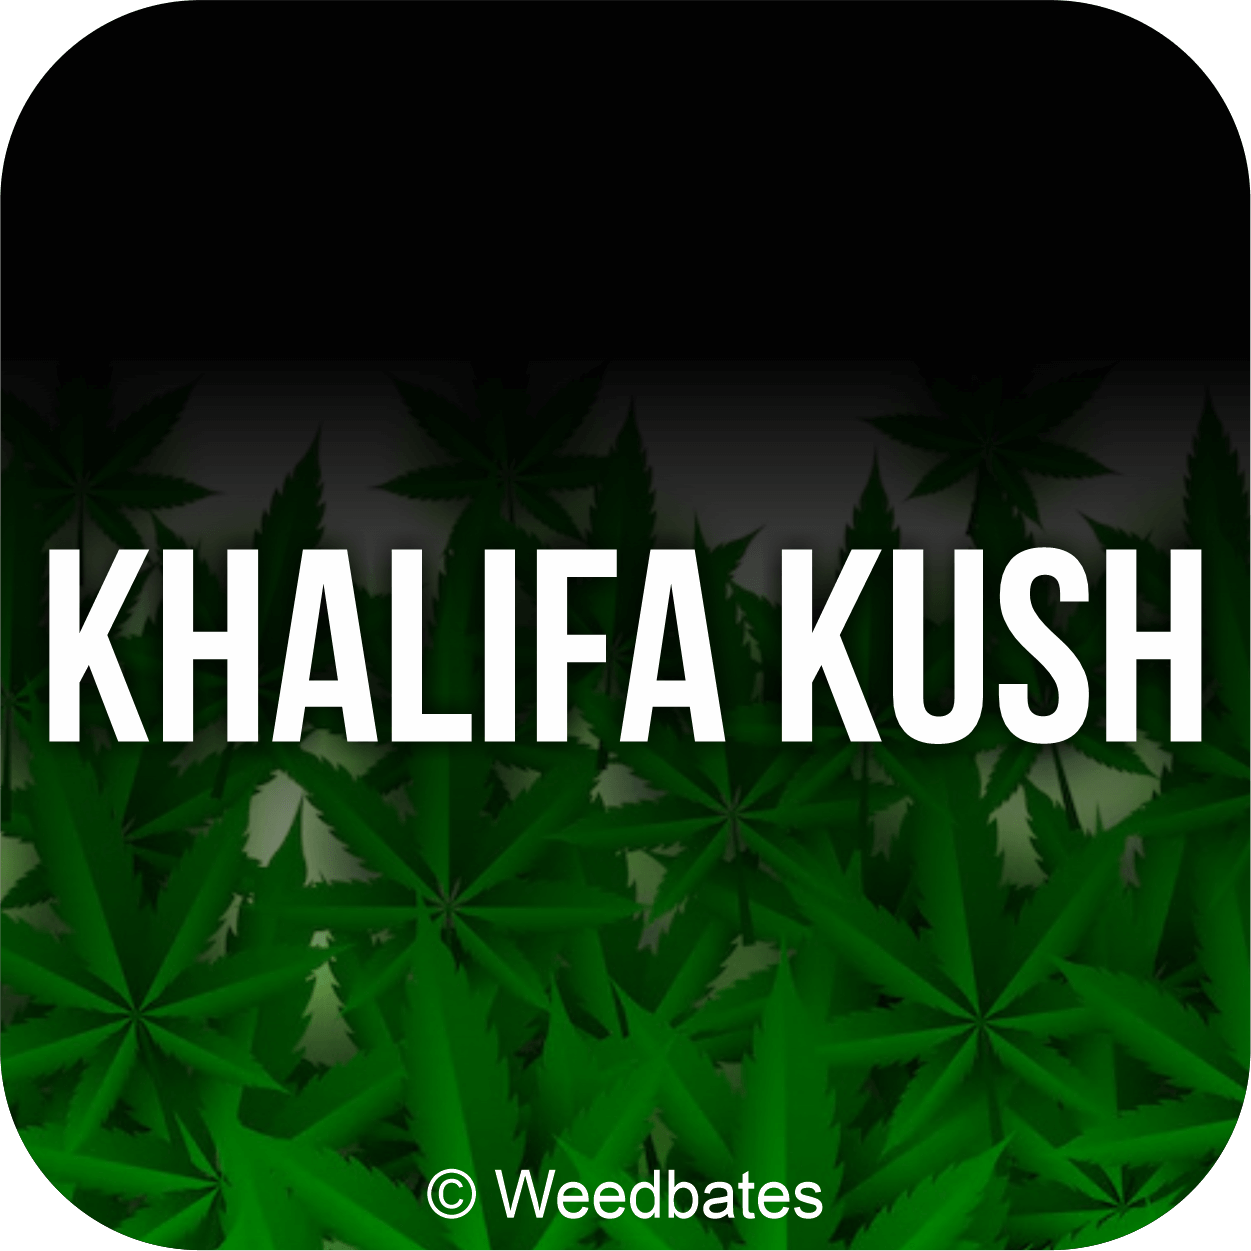 Khalifa Kush marijuana strain